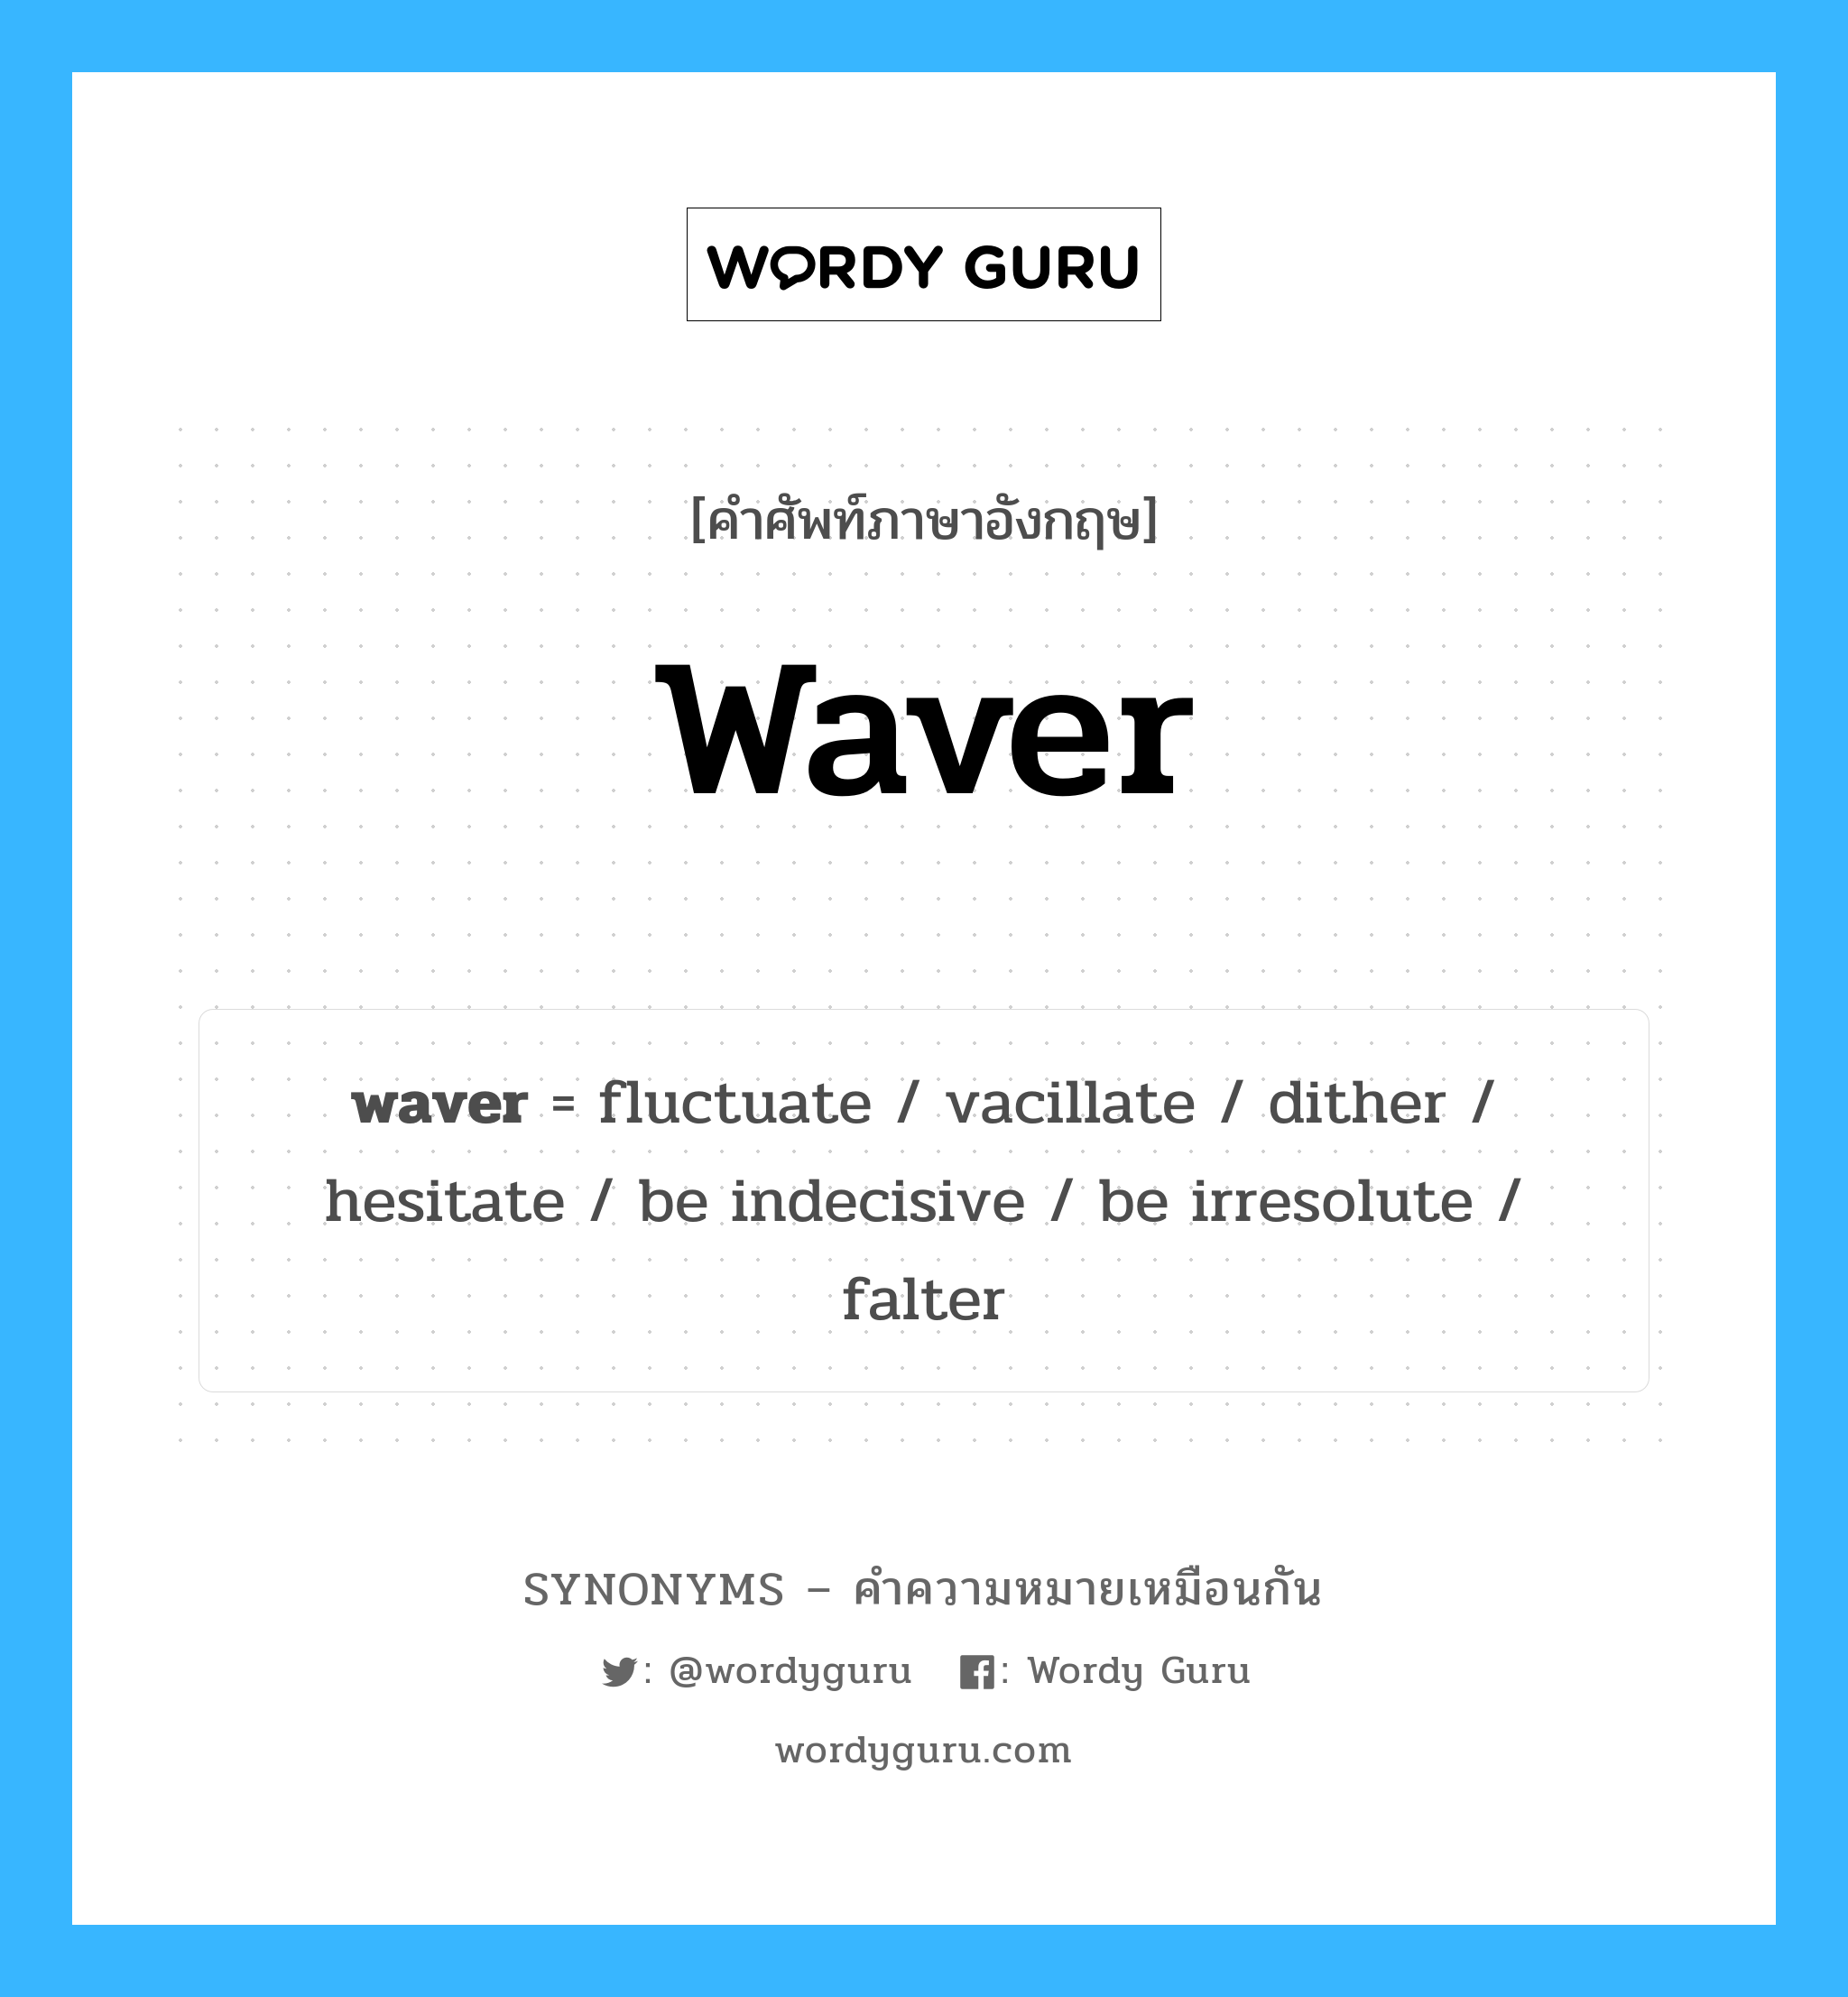 dither เป็นหนึ่งใน waver และมีคำอื่น ๆ อีกดังนี้, คำศัพท์ภาษาอังกฤษ dither ความหมายคล้ายกันกับ waver แปลว่า แปลงเป็นจุด หมวด waver